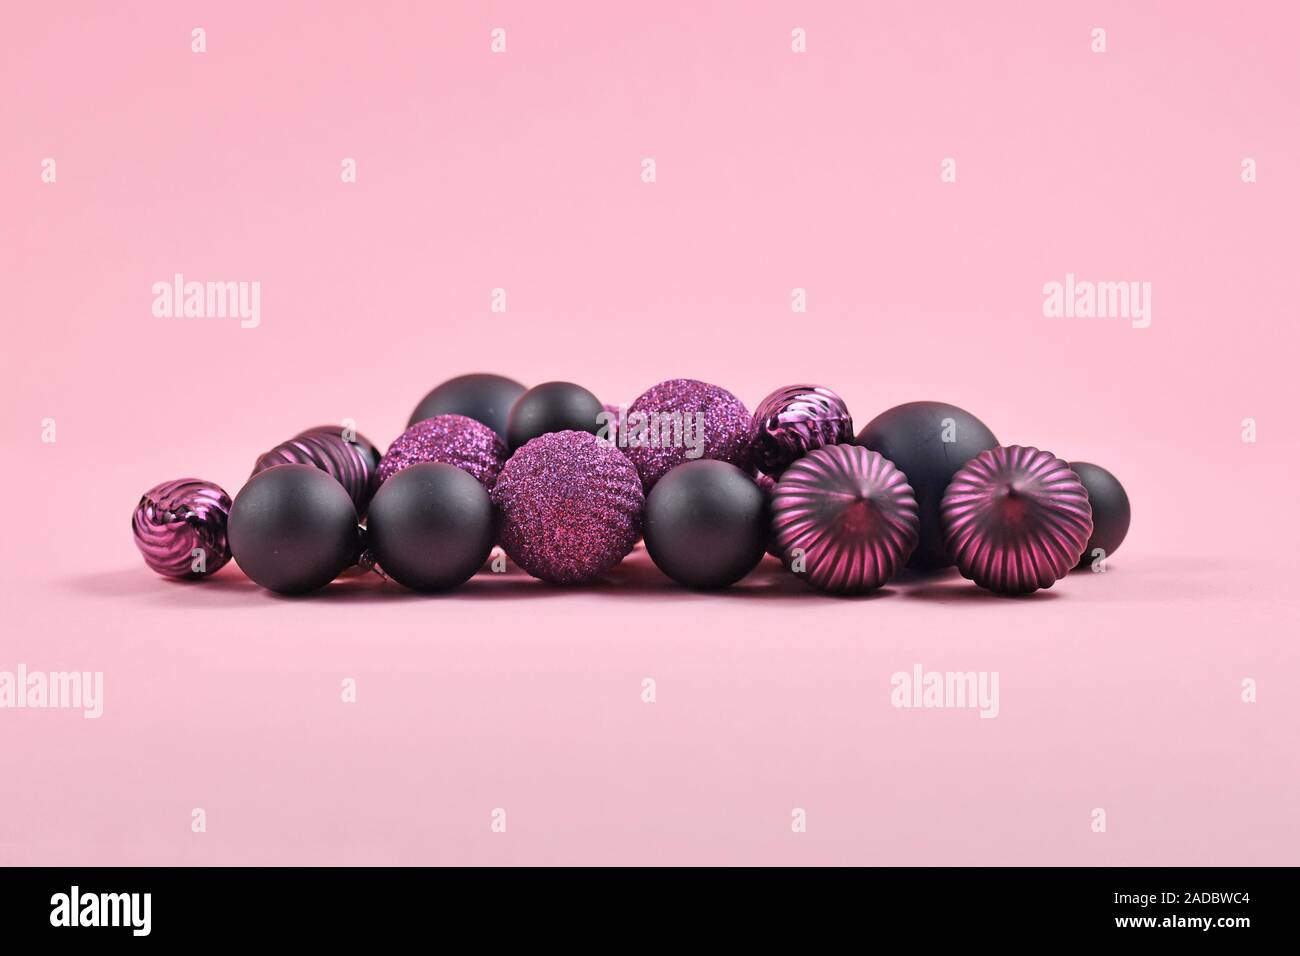 Stapel der dunkel Lila und Schwarz Christbaumschmuck in Form von runden Kugel Kugeln auf rosa Hintergrund Stockfoto